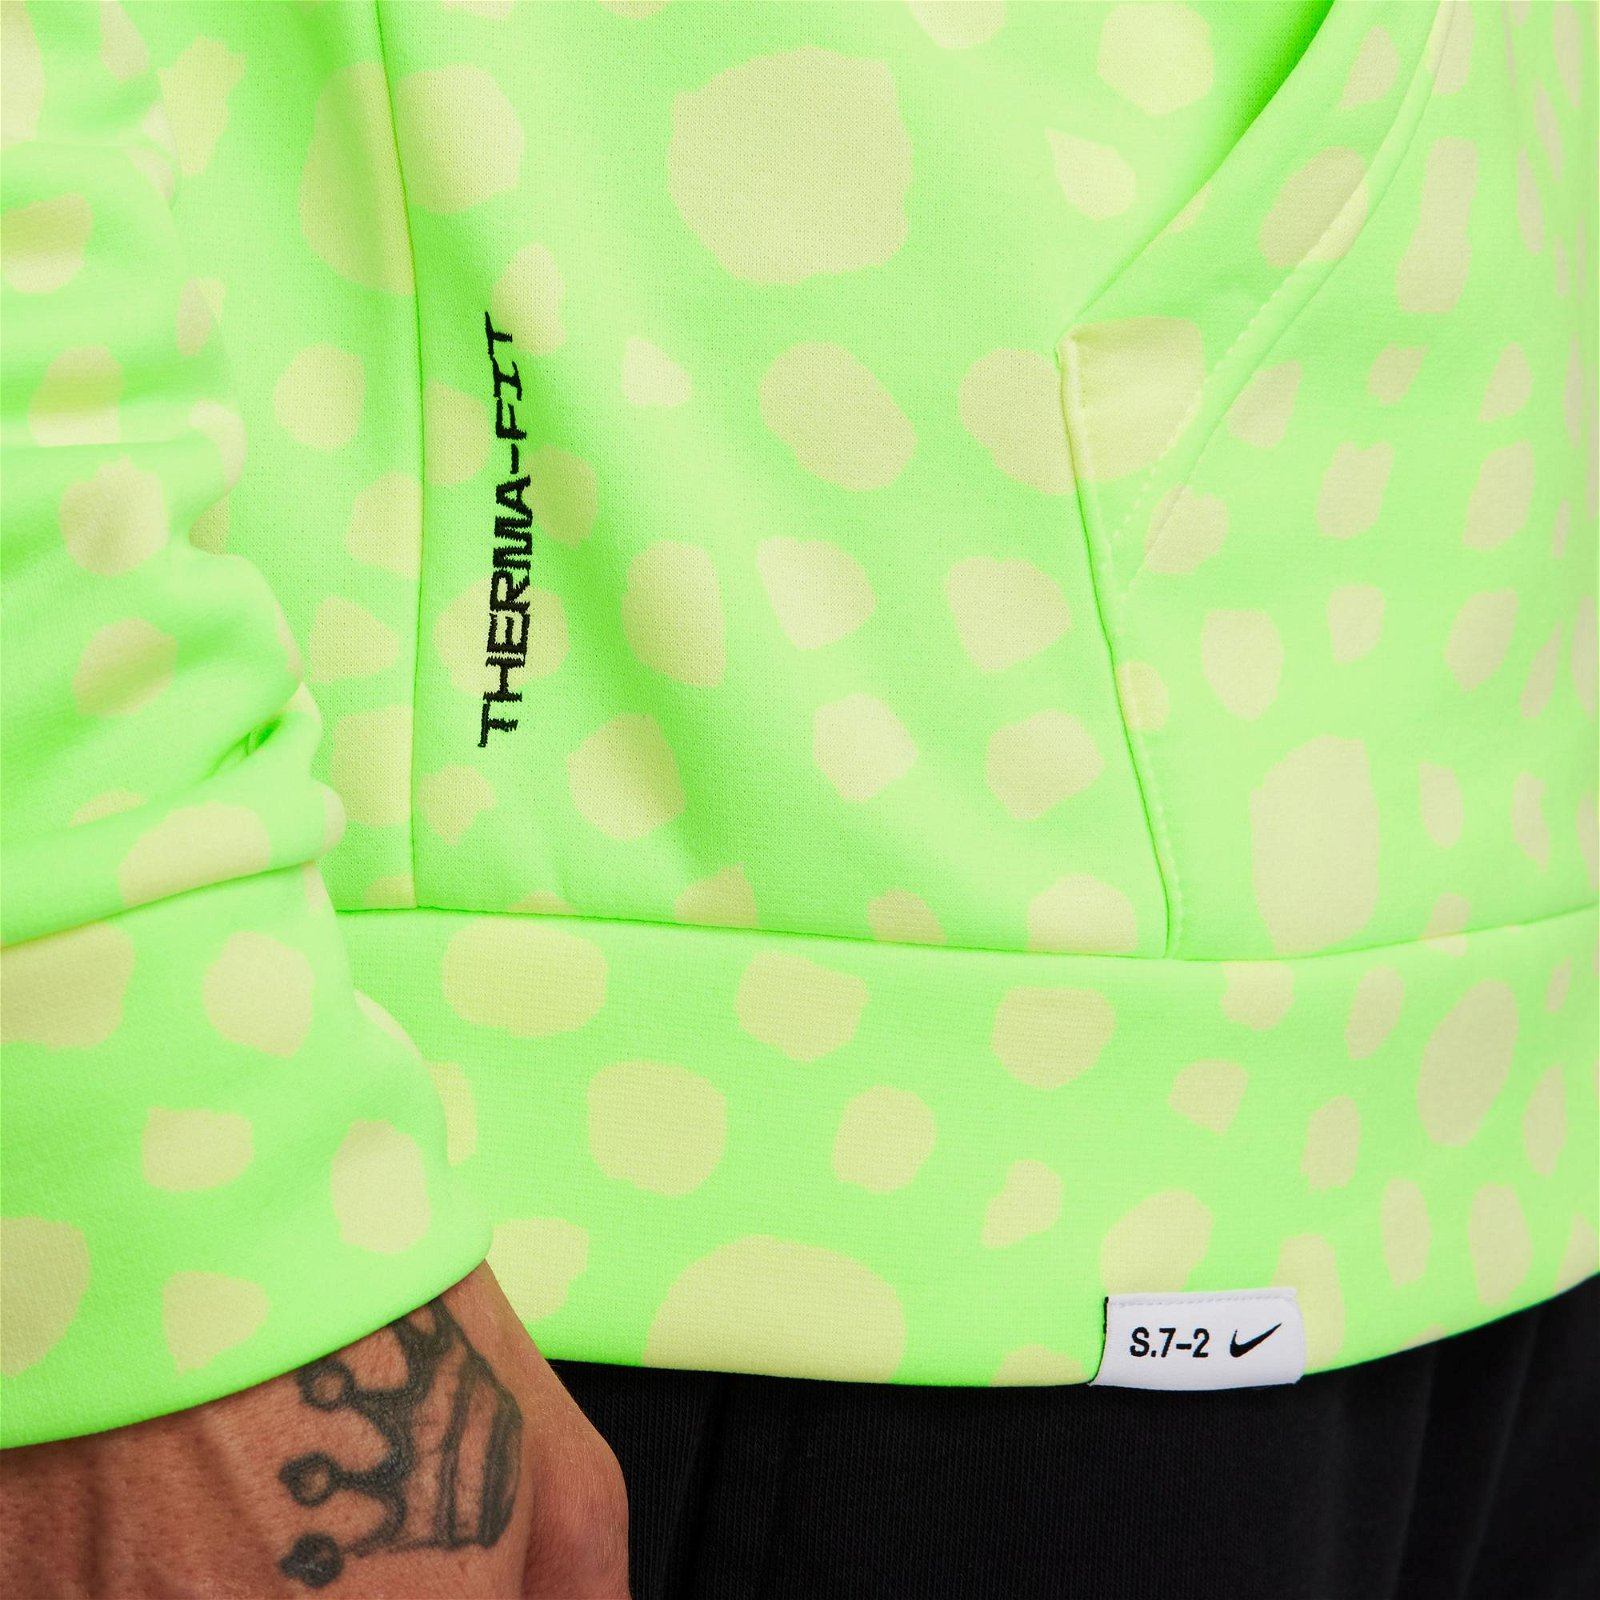 Nike Therma-FIT Studio '72 Full Zip Erkek Yeşil Sweatshirt